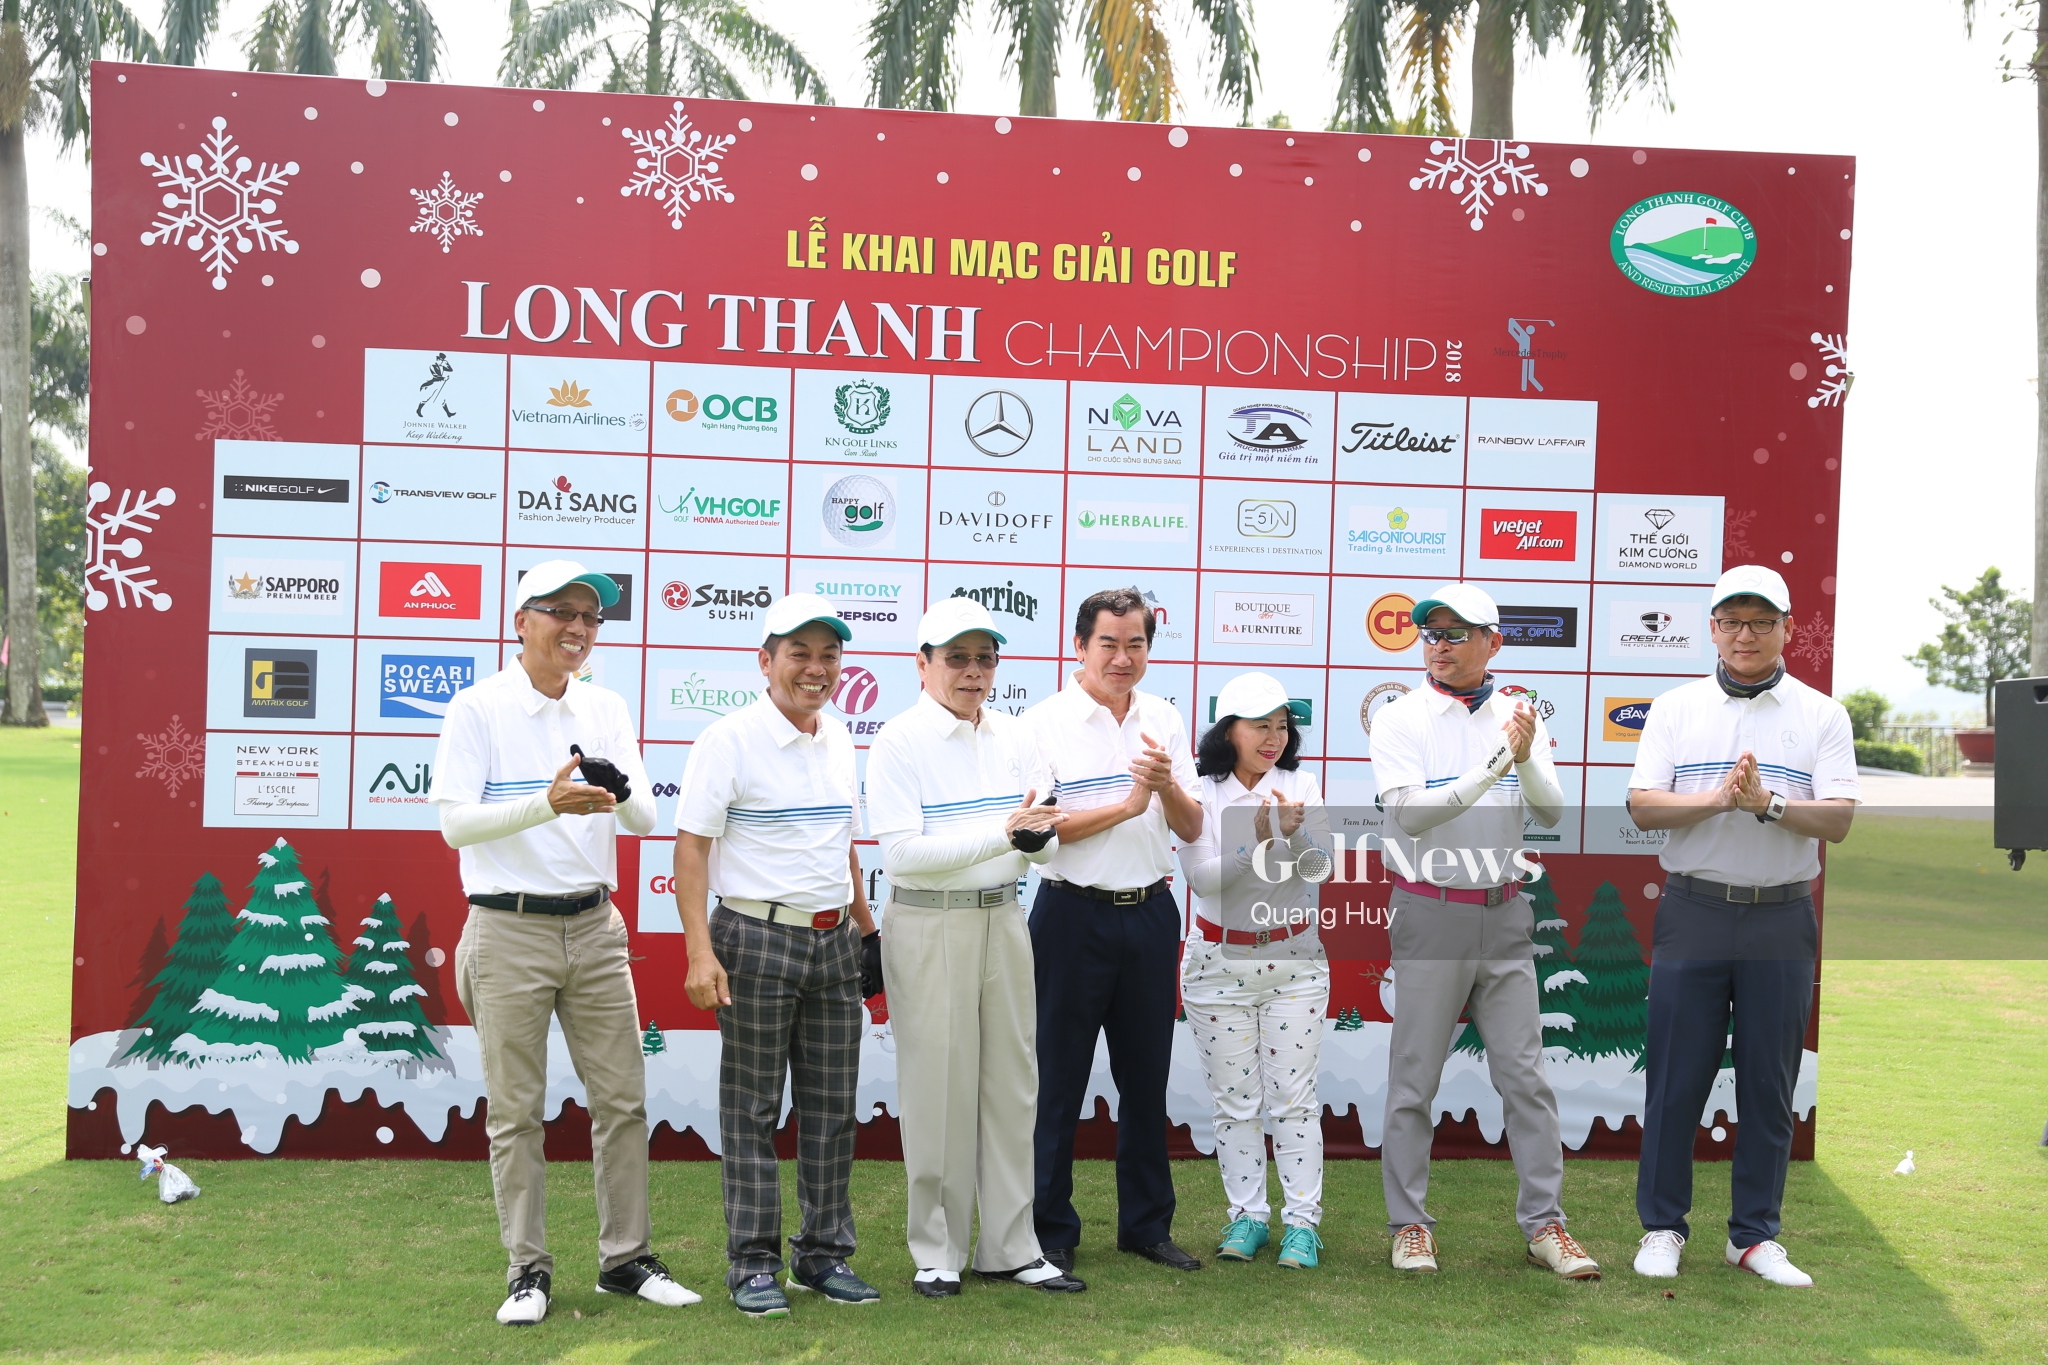 Long Thanh Golf Club Championship 2018 thu hút hơn 300 golfer tham dự